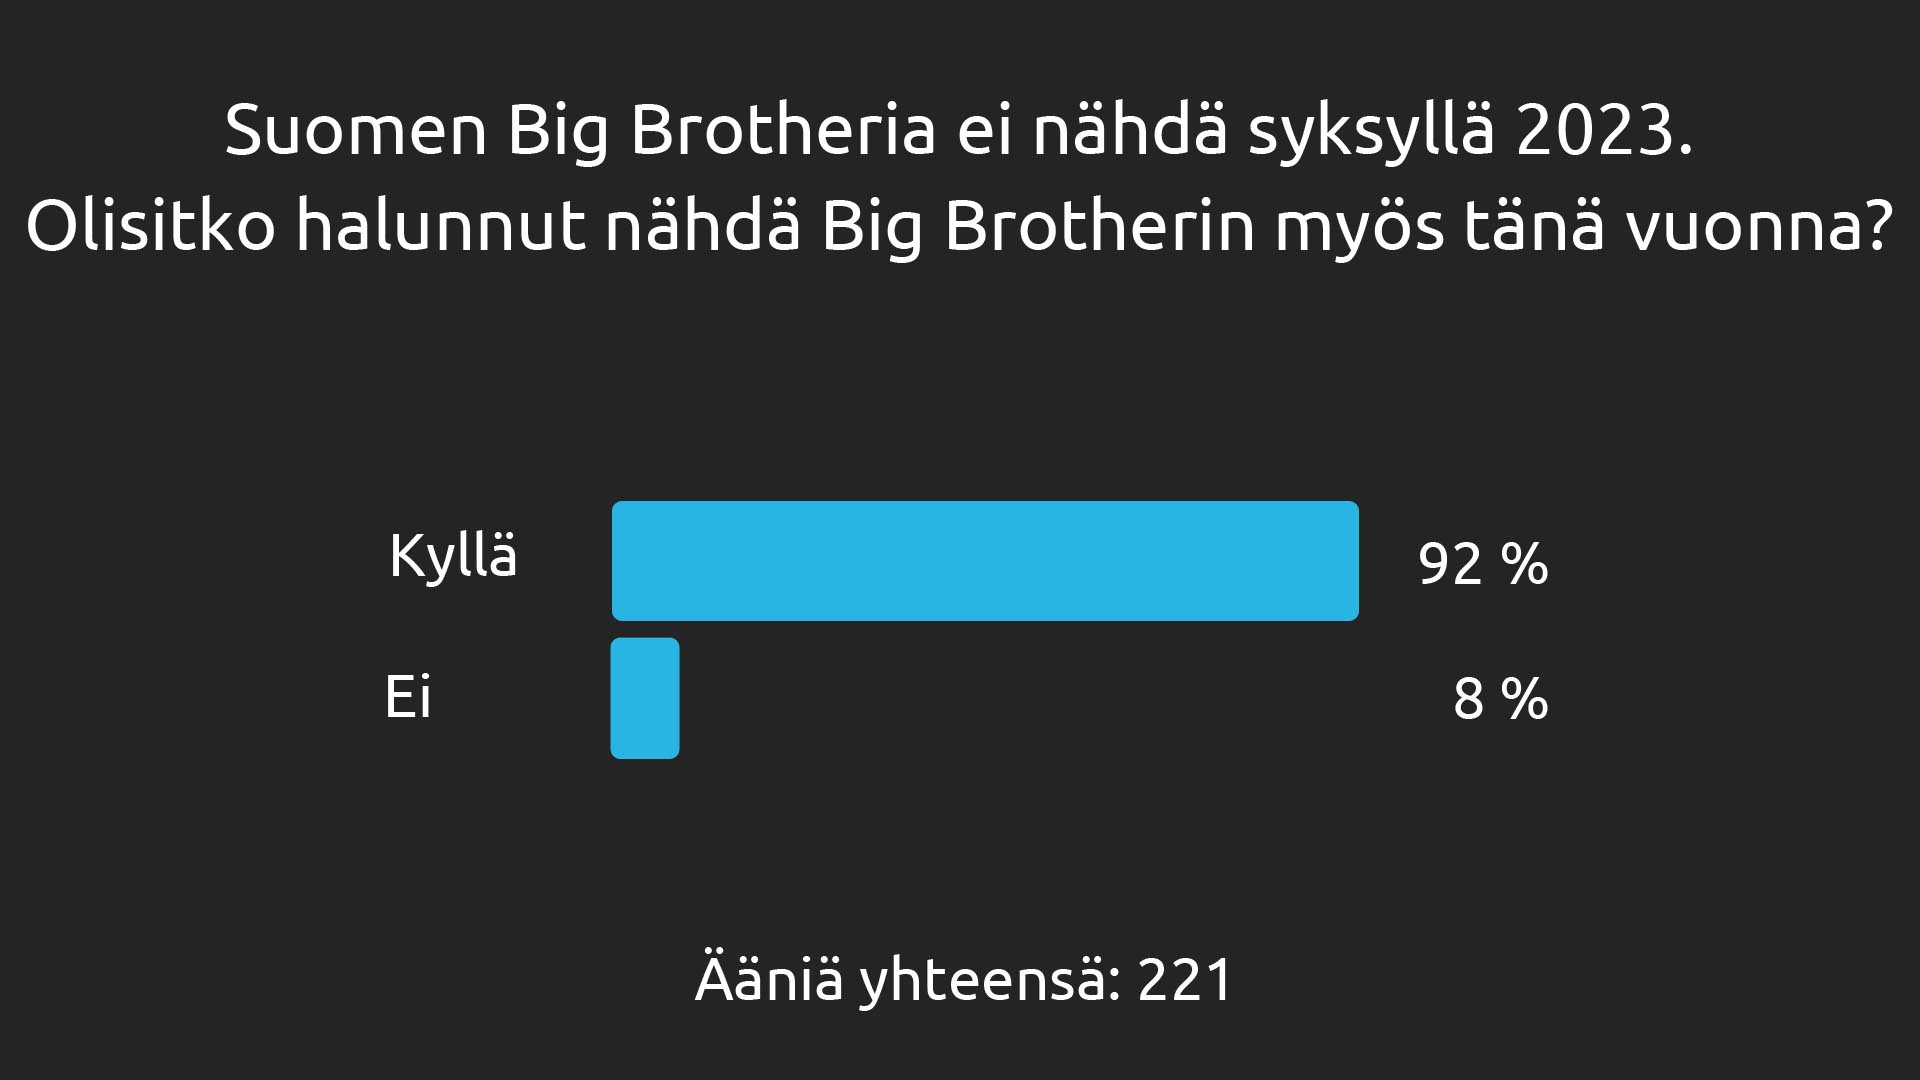 Big Brother Fanisivujen kyselyn tulos Big Brotherin paluusta. Kyselyn 221 vastaajasta 92 % olisi halunnut nähdä Big Brotherin vuonna 2023, 8 % ei. Data: Fanisivut.net / Easypolls. Grafiikka: Jarkko Nieminen / Fanisivut.net.